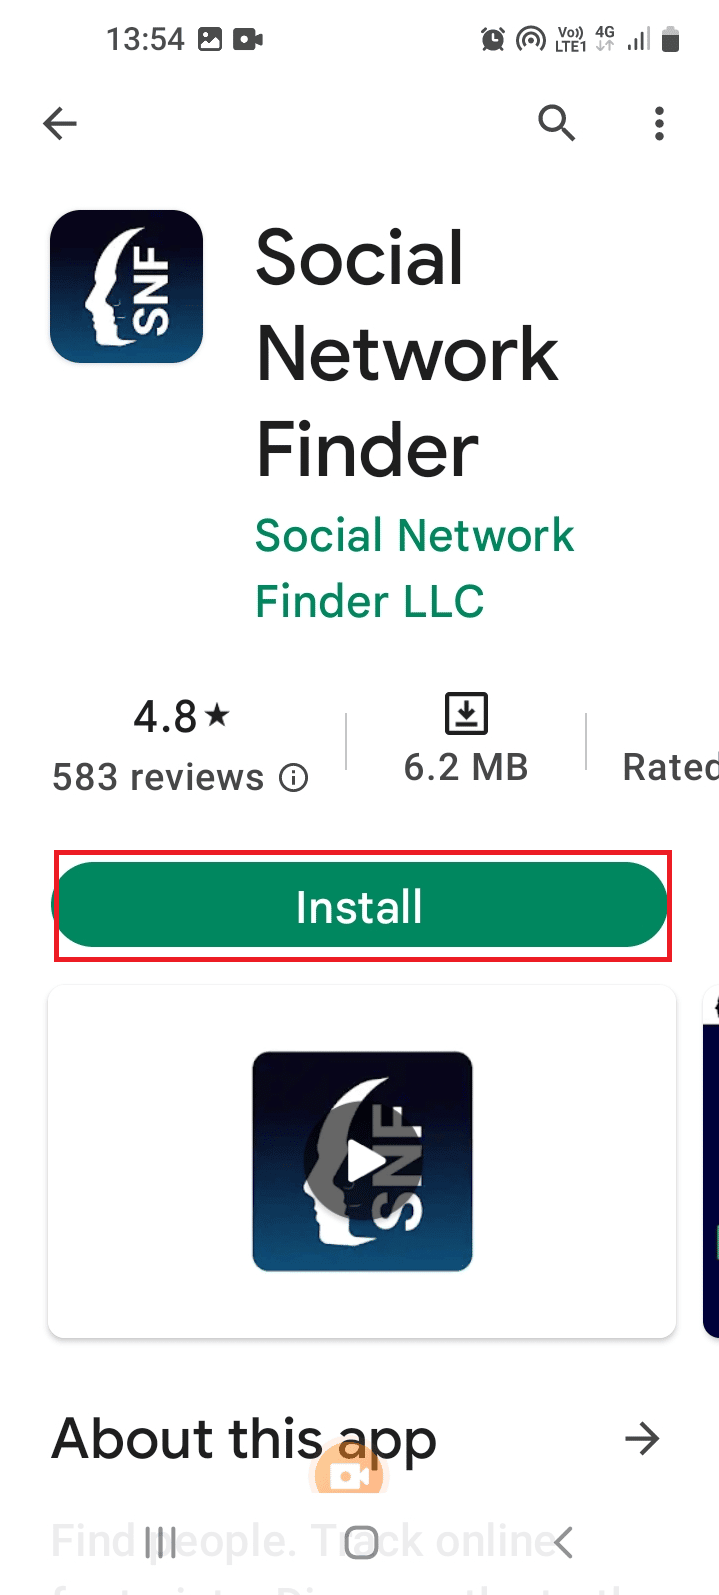 Social Network Finder